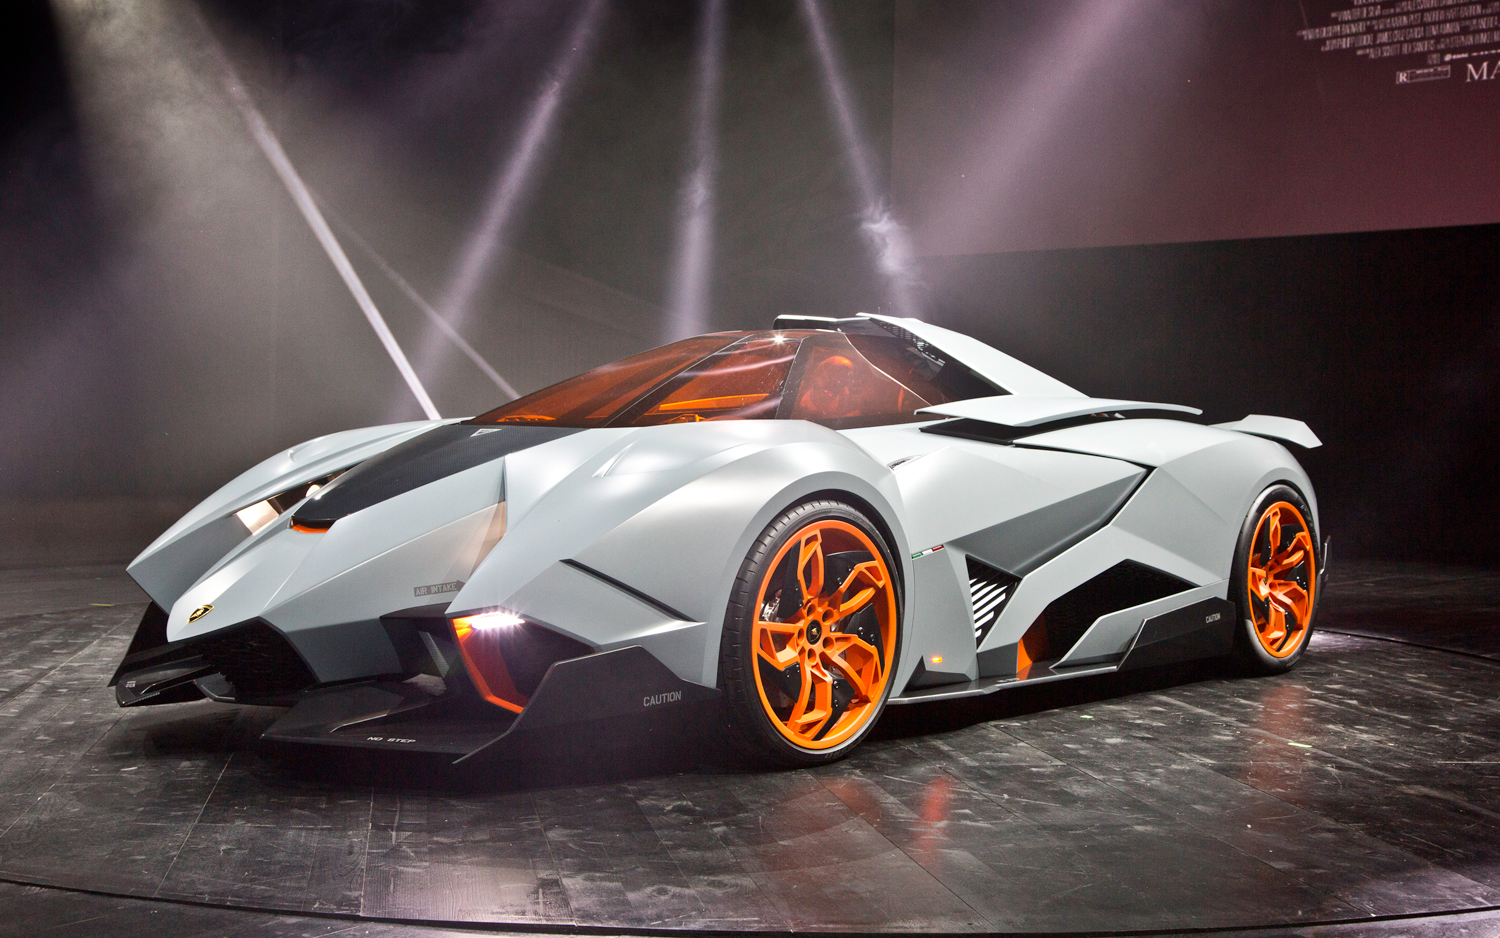 2013 Lamborghini Egoista Exterior, Interior, Video, Gallery, Price and